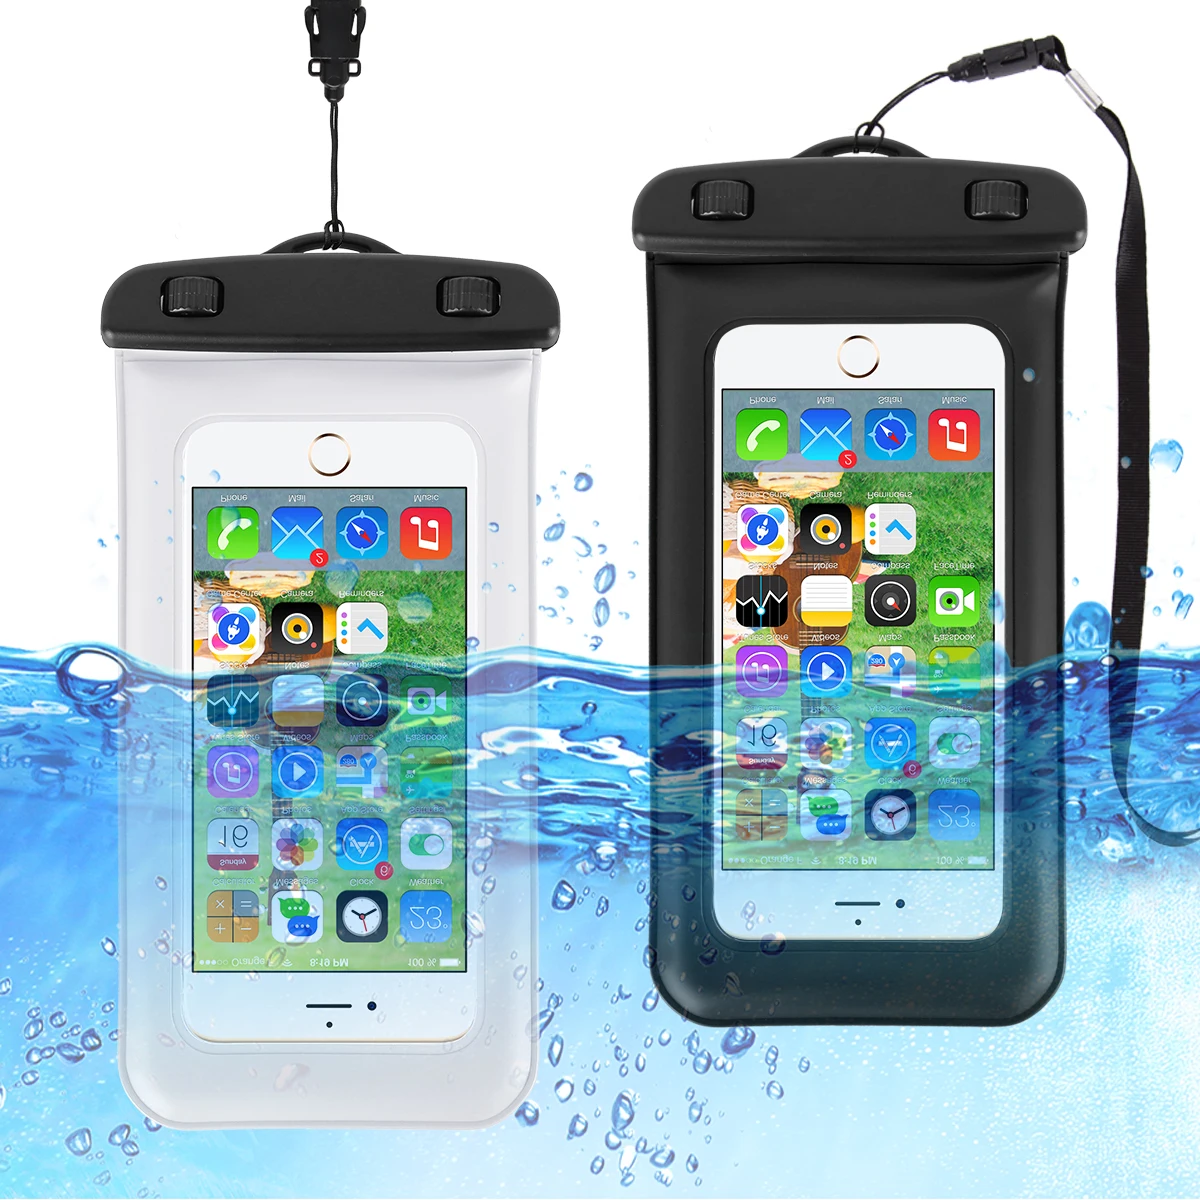 Flotador de la prenda Impermeable de la Bolsa de la caja del Teléfono Para Samsung A50 A51 S20 S10 Lite iPhone 11 Max Pro Xs X XR 6 8 7 Plus Redmi a Prueba de Agua Bolsa de Nadar 1